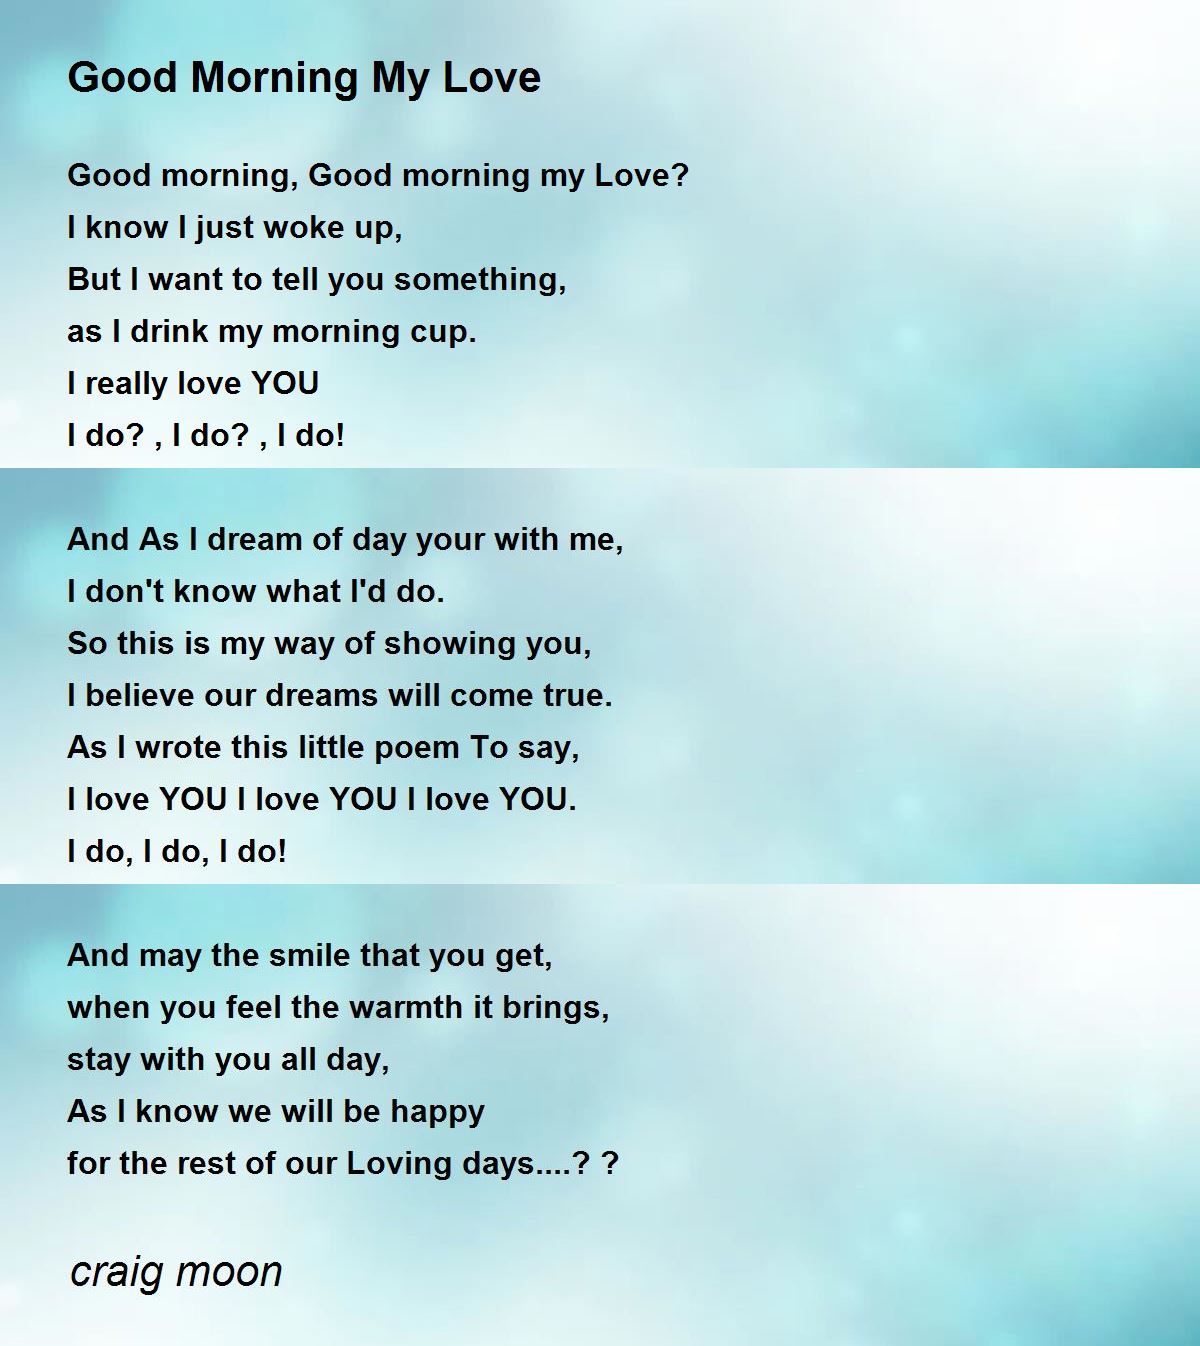 Good Morning My Love - Good Morning My Love Poem by craig moon